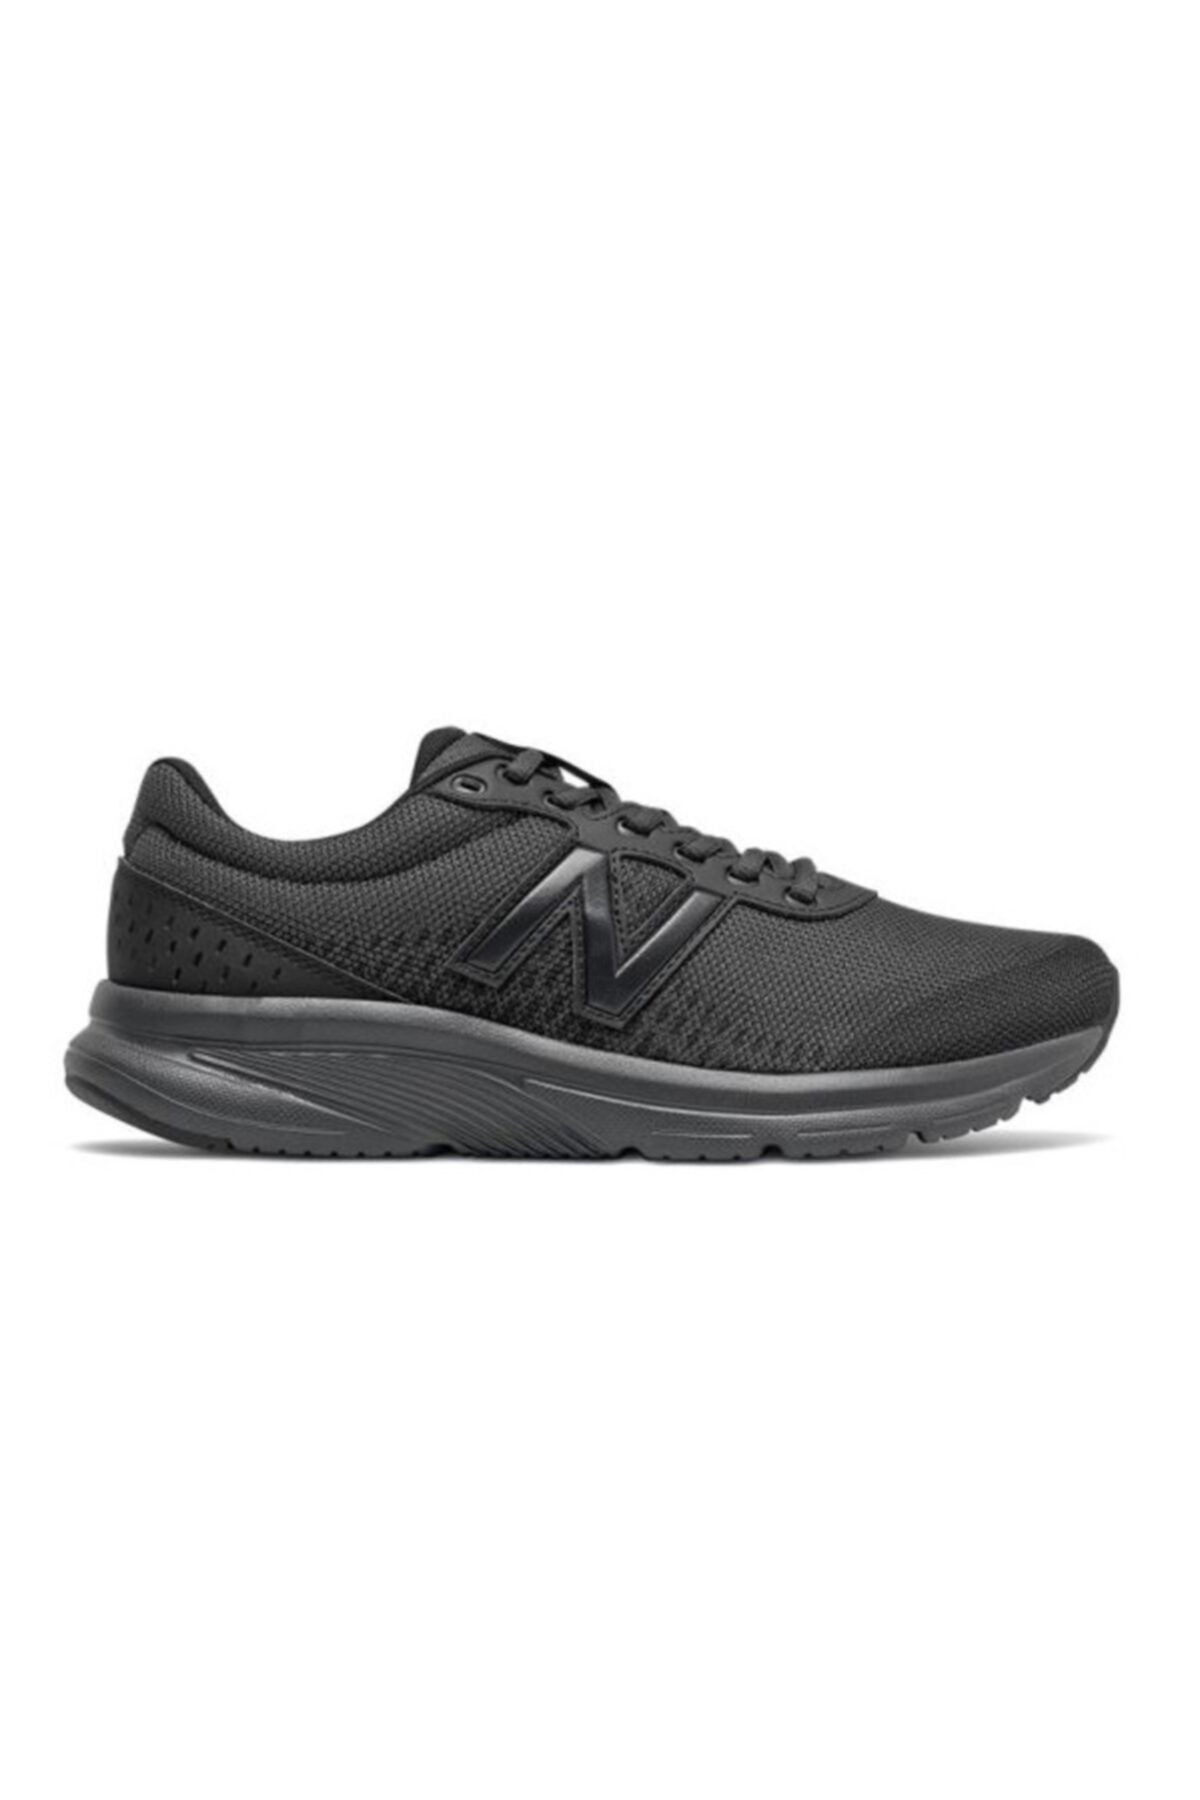 New Balance Erkek Siyah  Koşu Ayakkabısı M411lk2